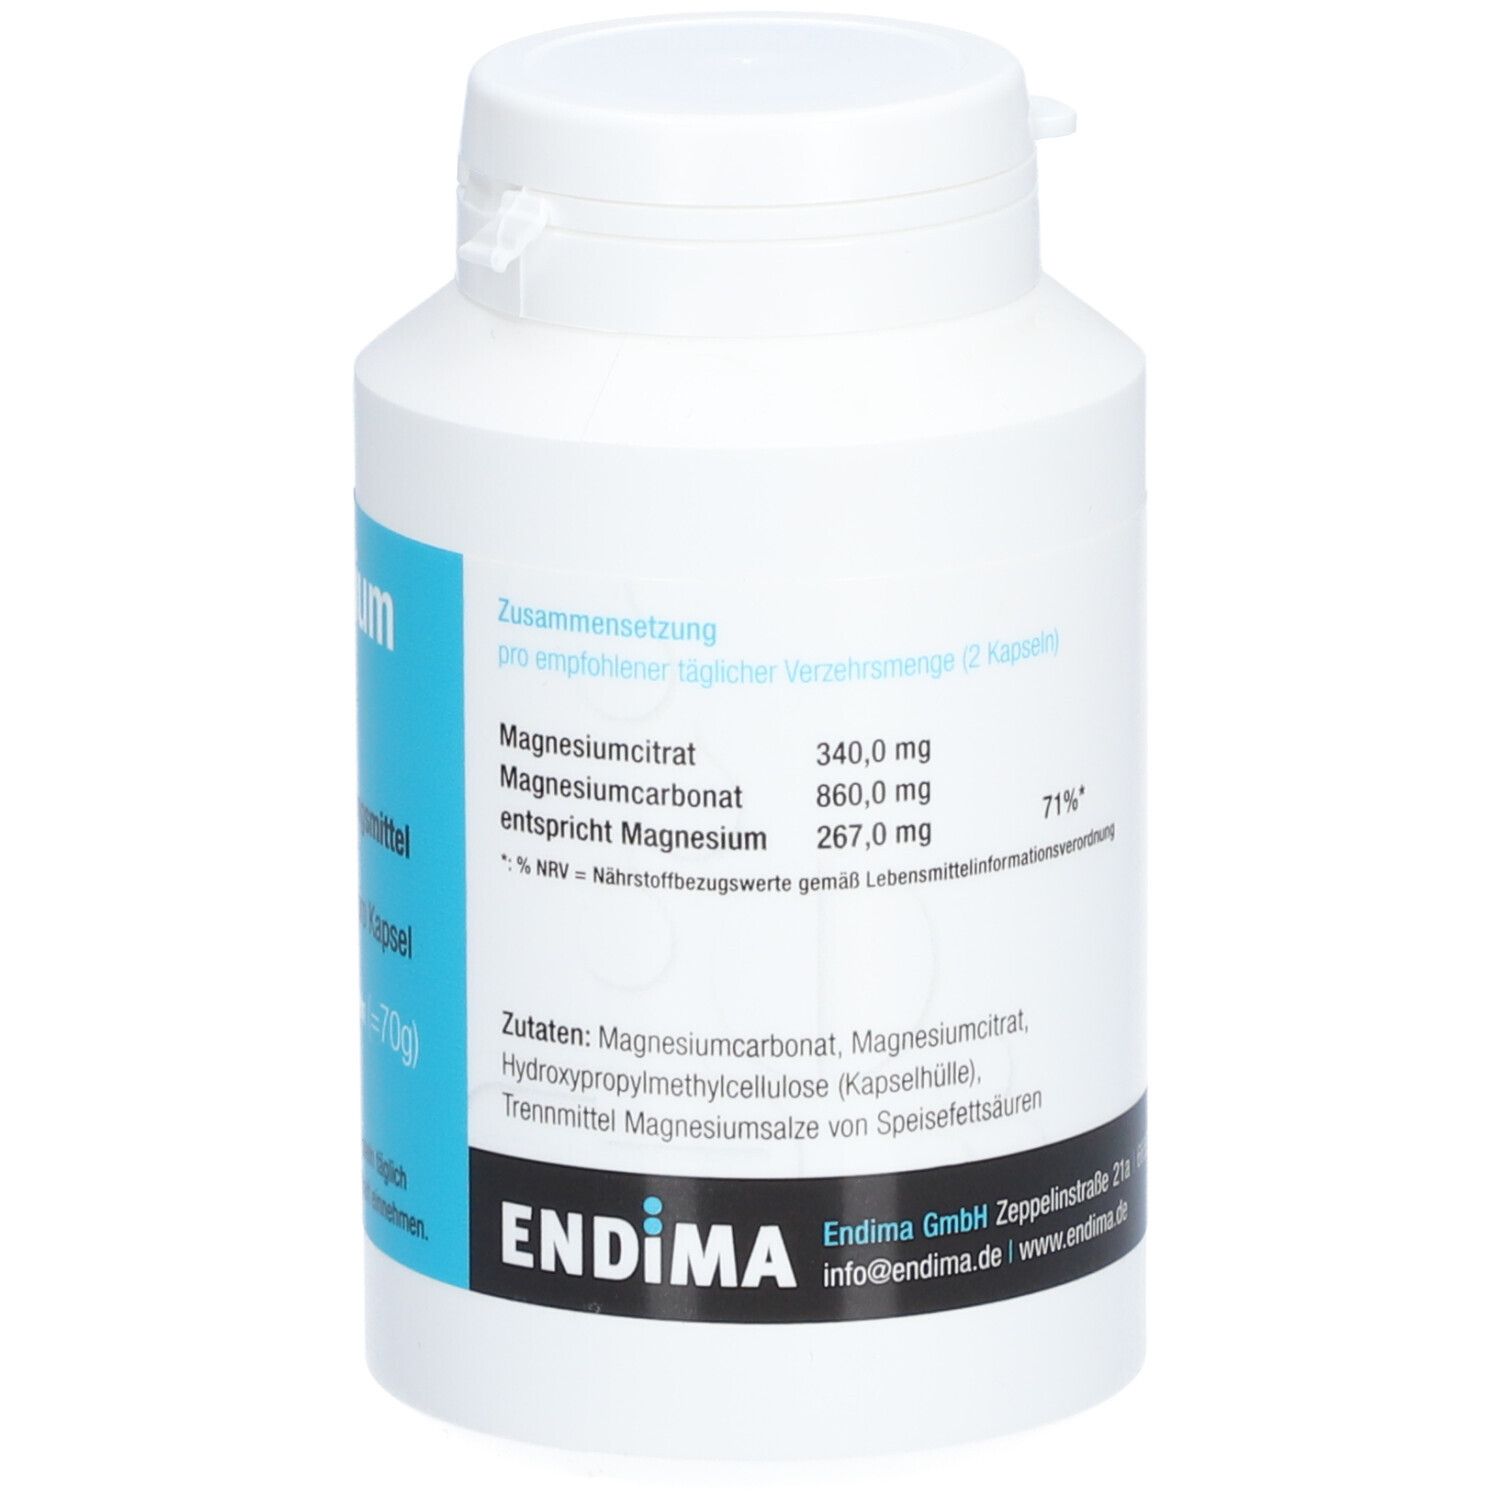 Endima® Magnesium 600 Kapseln